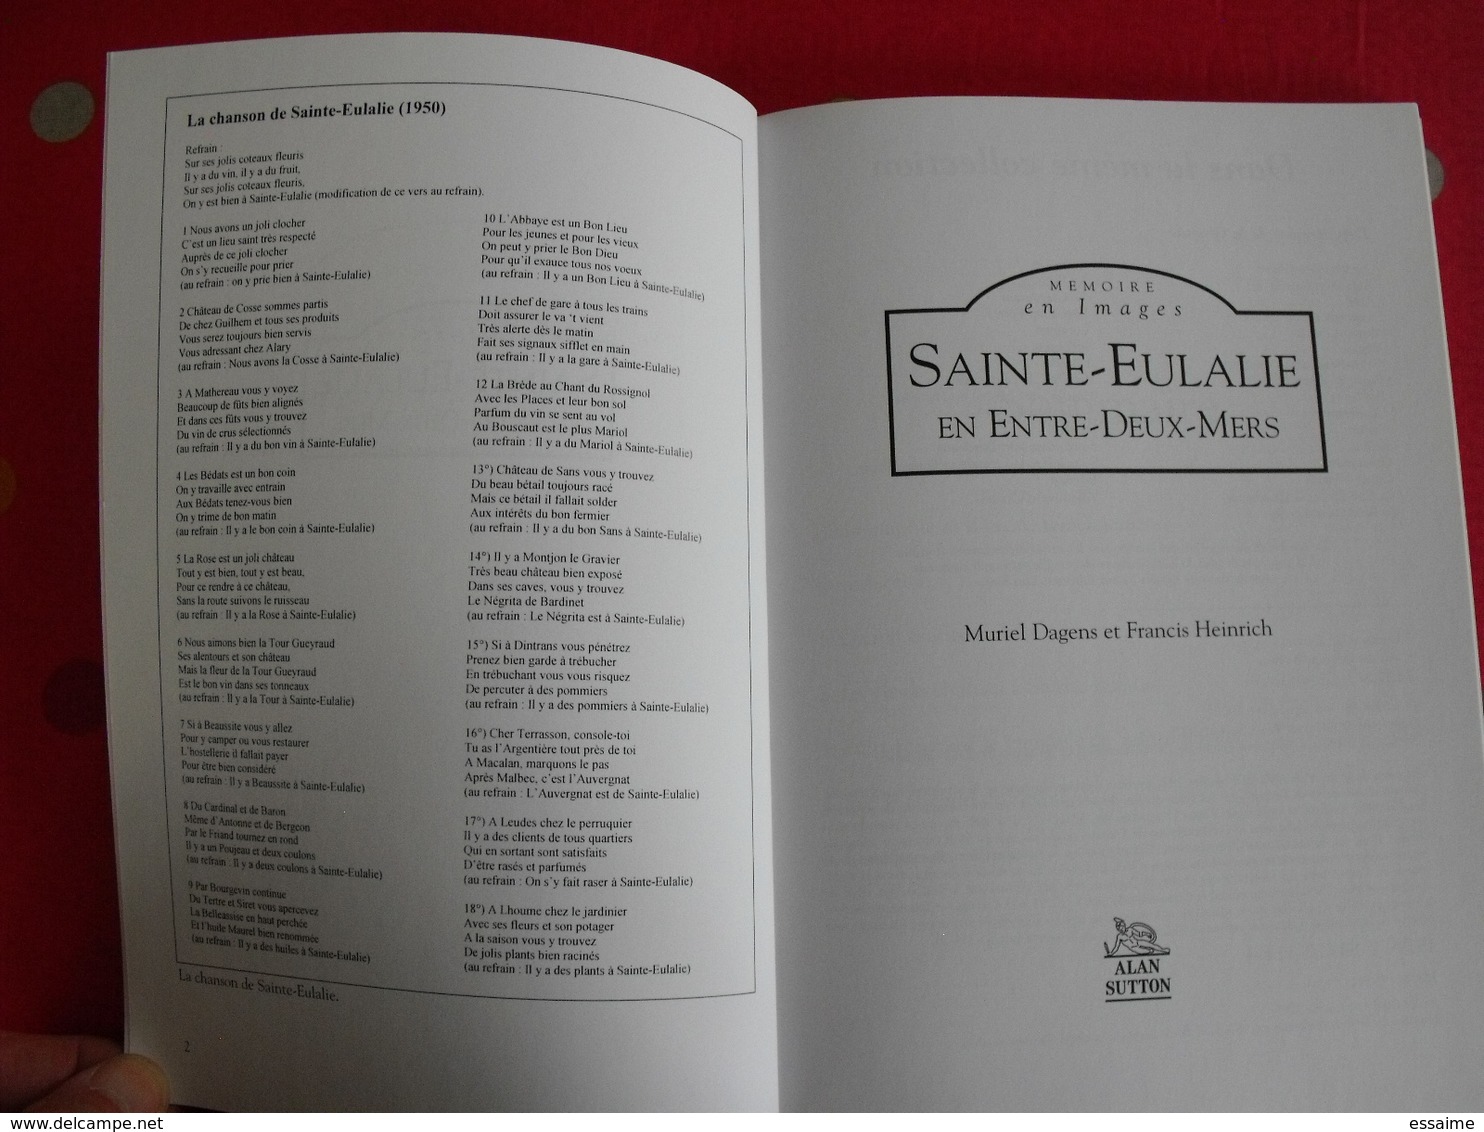 Sainte-Eulalie, Entre-deux-mers. Gironde. Dagens. Mémoire En Images. éditions Alan Sutton. 2005. Cartes Postales Photos - Aquitaine